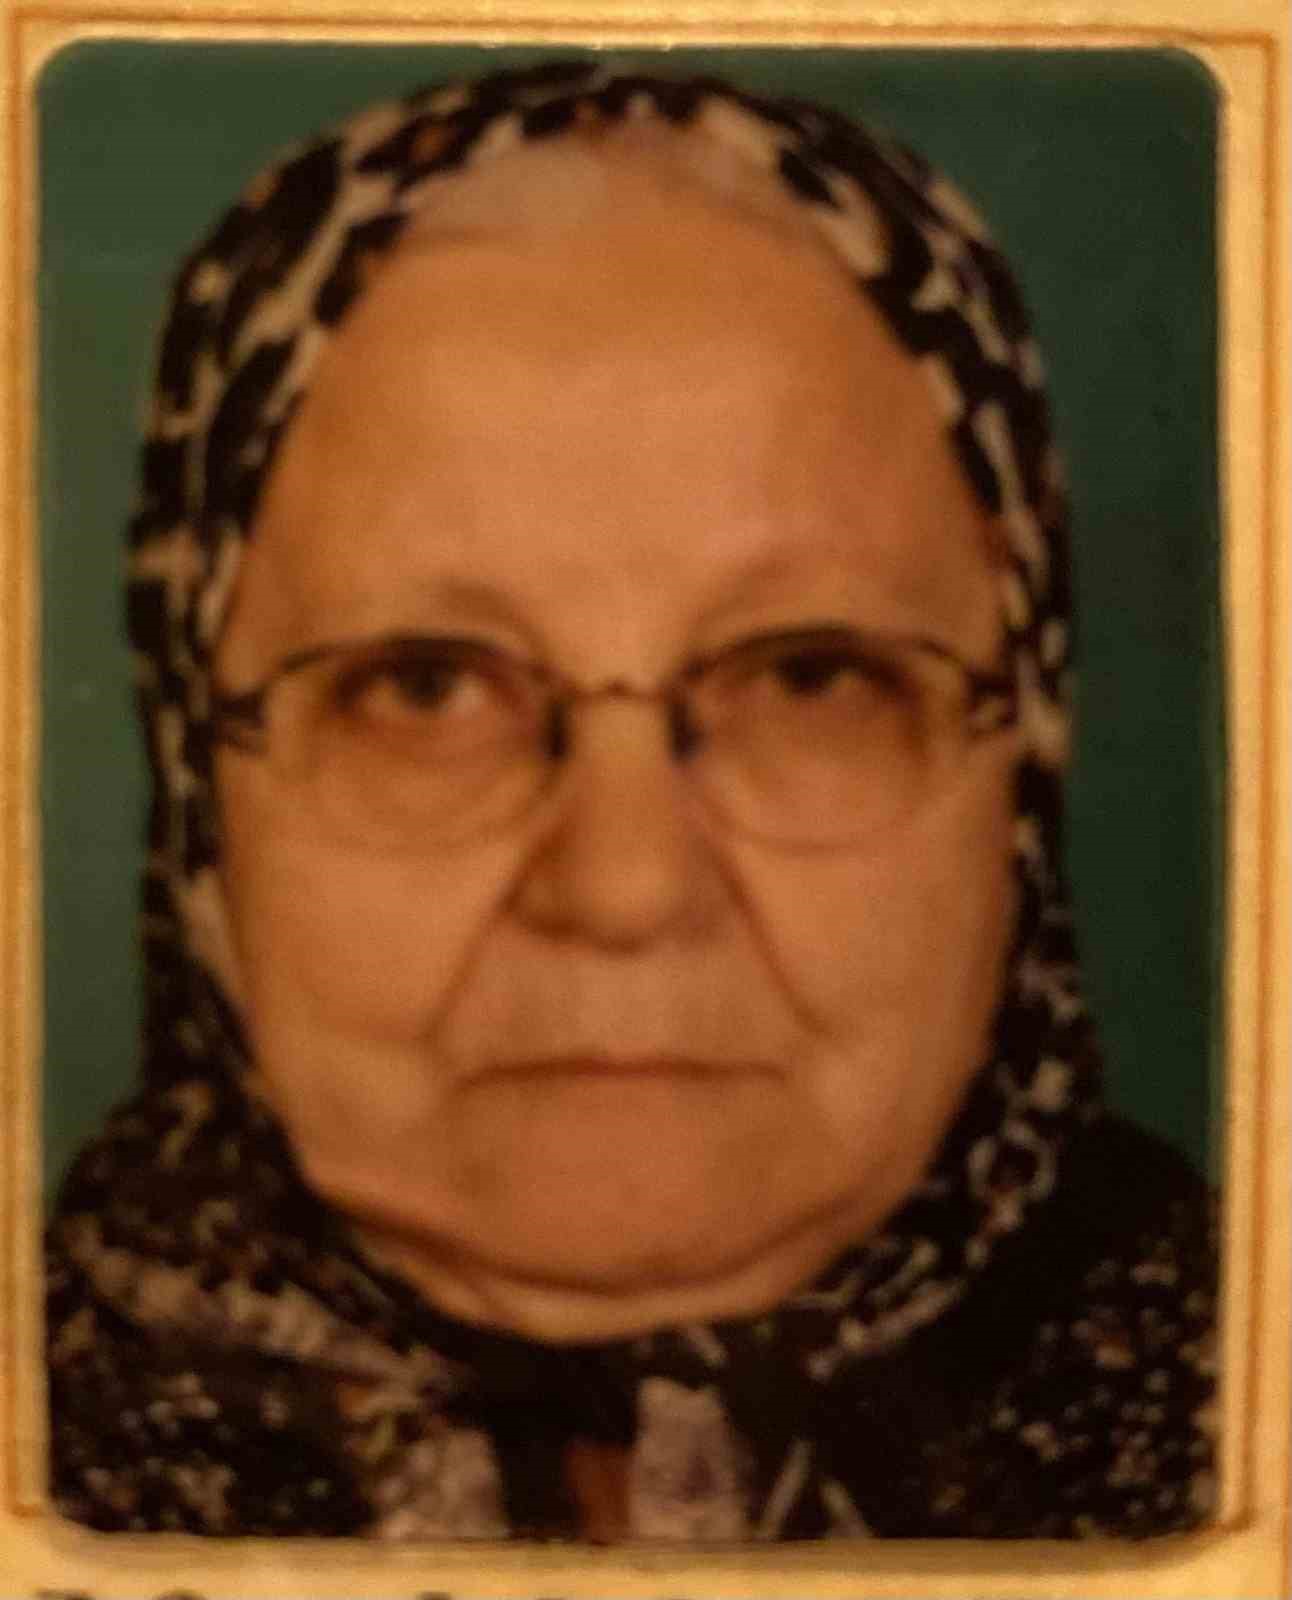 Burdur’da şizofreni hastası oğluyla birlikte yaşayan yaşlı kadın evinde ölü bulundu
